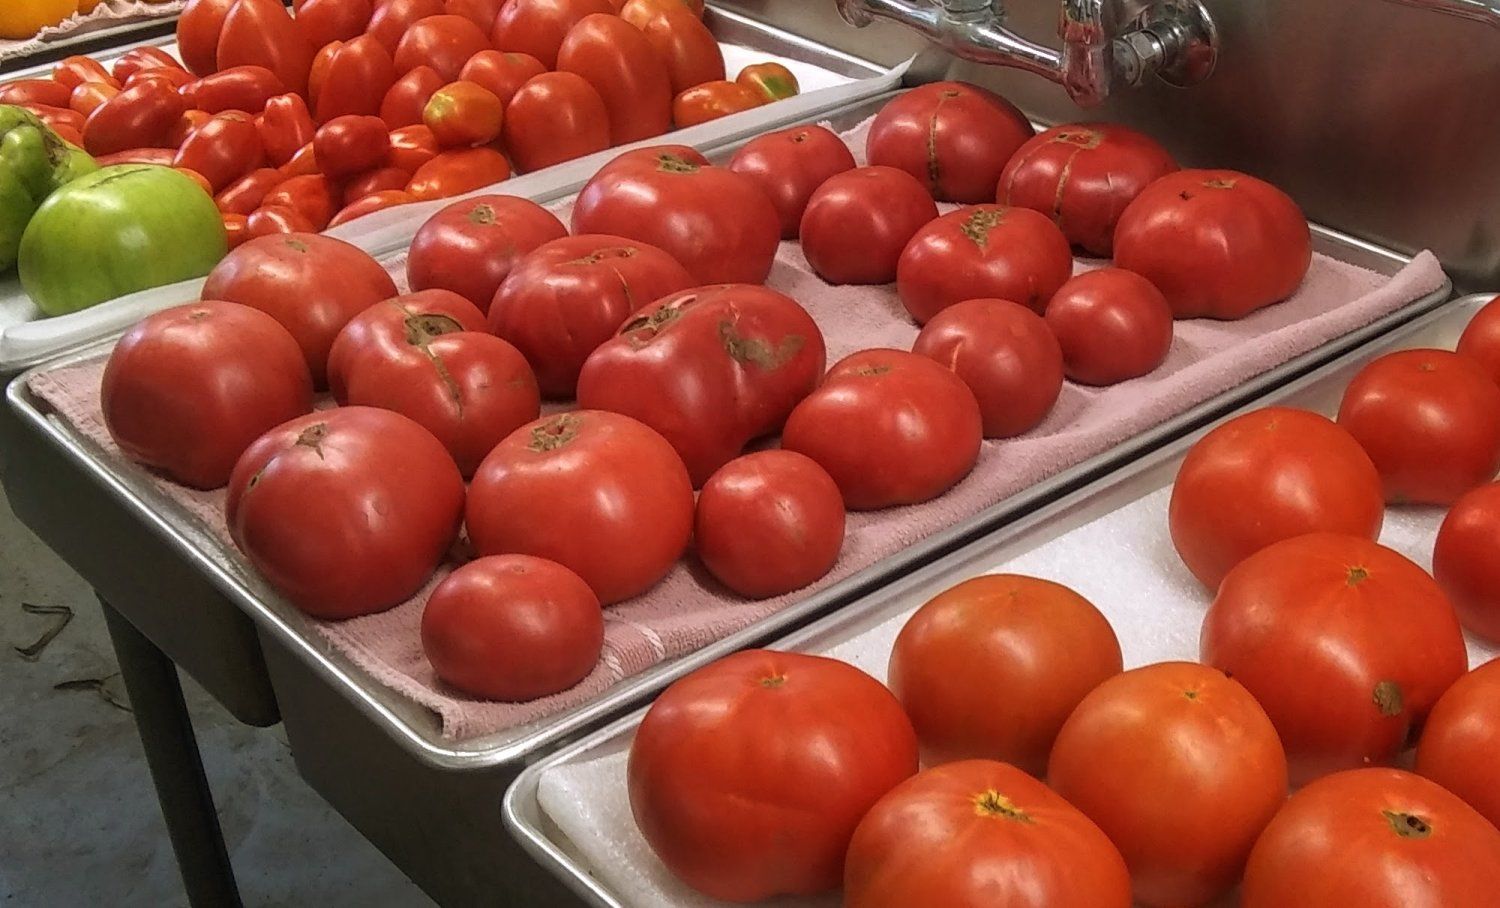 Previous Happening: Tomato Season!